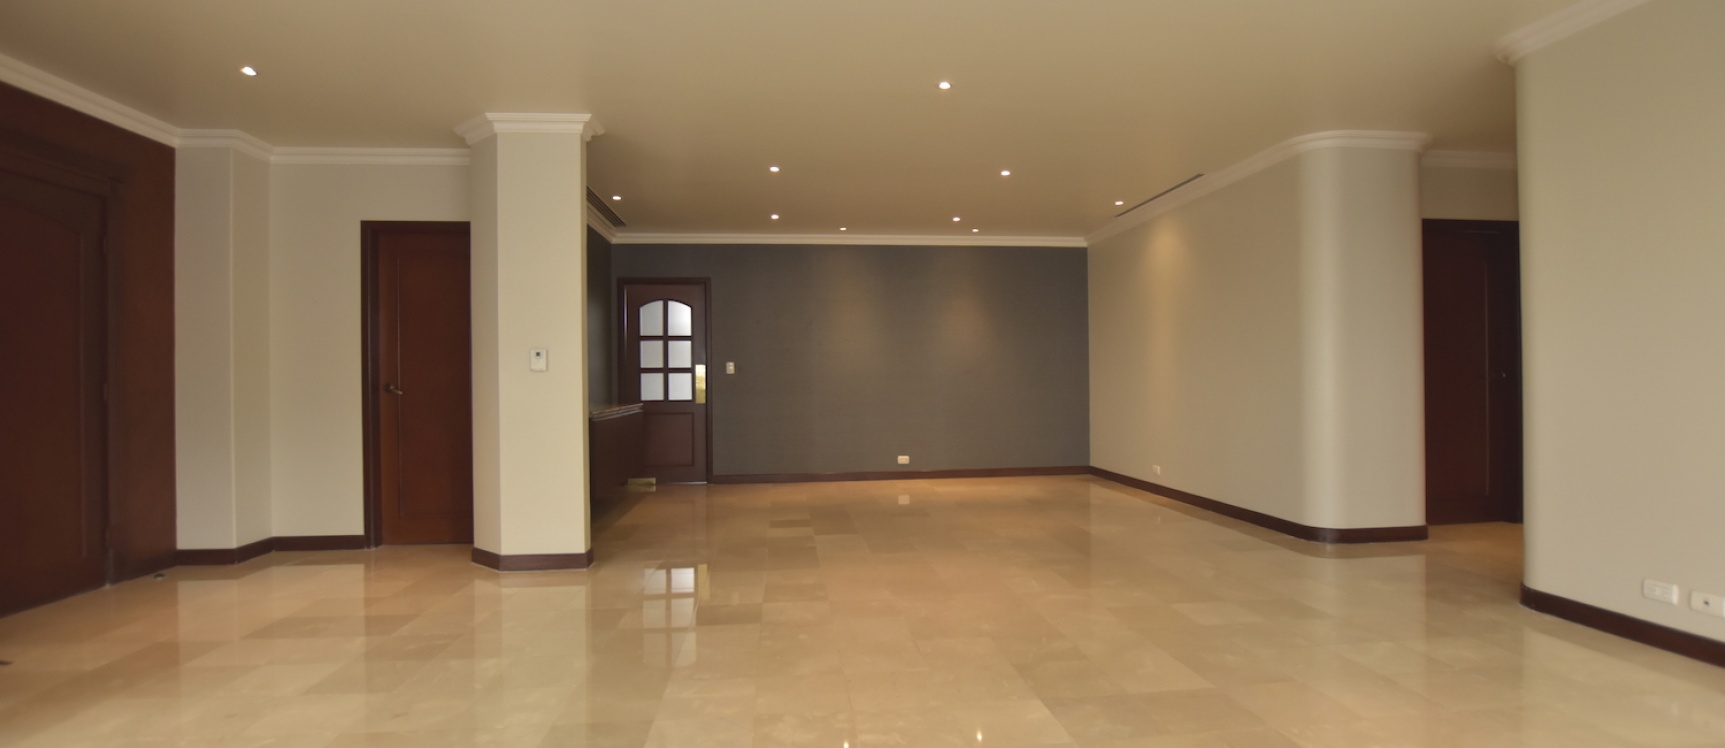 GeoBienes - Departamento en venta ubicado en Edificio Olivos II, Los Ceibos - Plusvalia Guayaquil Casas de venta y alquiler Inmobiliaria Ecuador